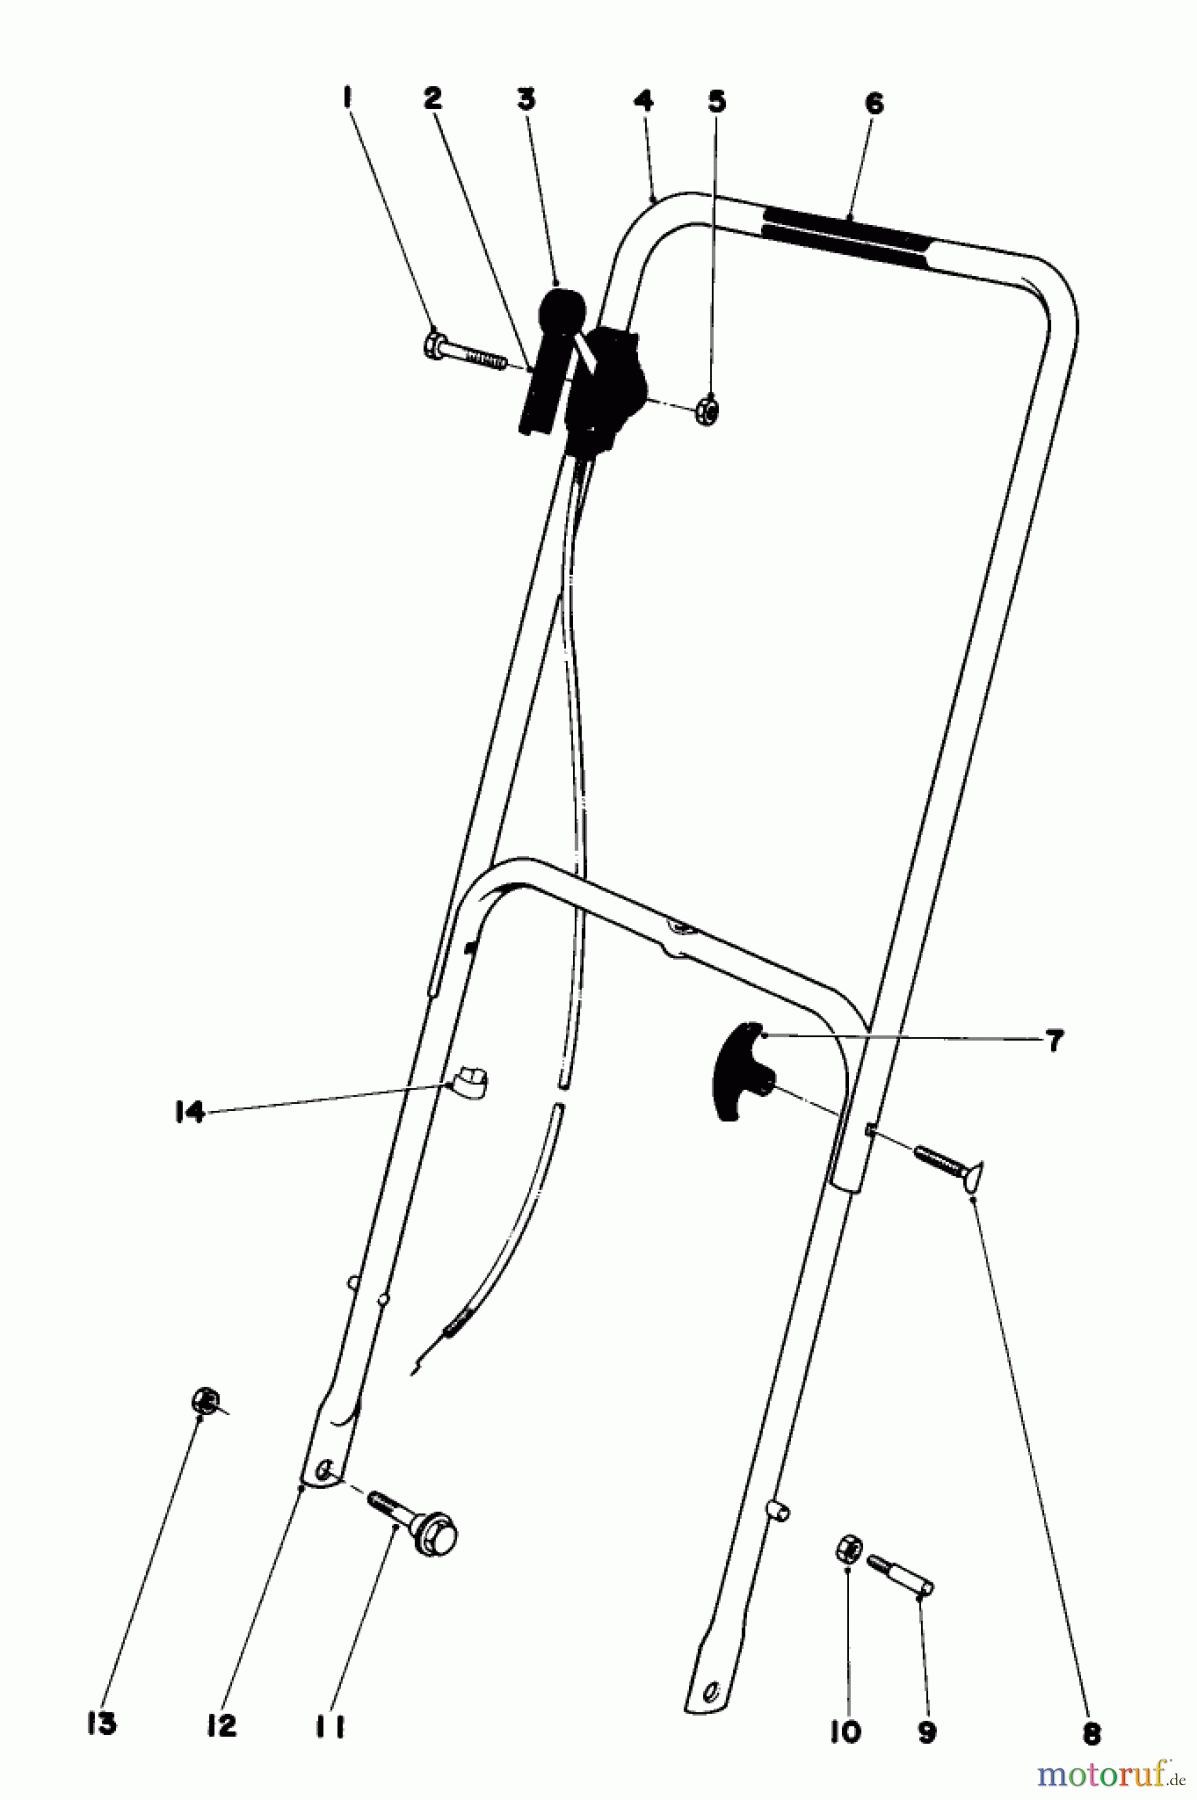  Toro Neu Mowers, Walk-Behind Seite 1 16360 - Toro Whirlwind, 1979 (9000001-9999999) HANDLE ASSEMBLY MODEL 16360 AND 16370